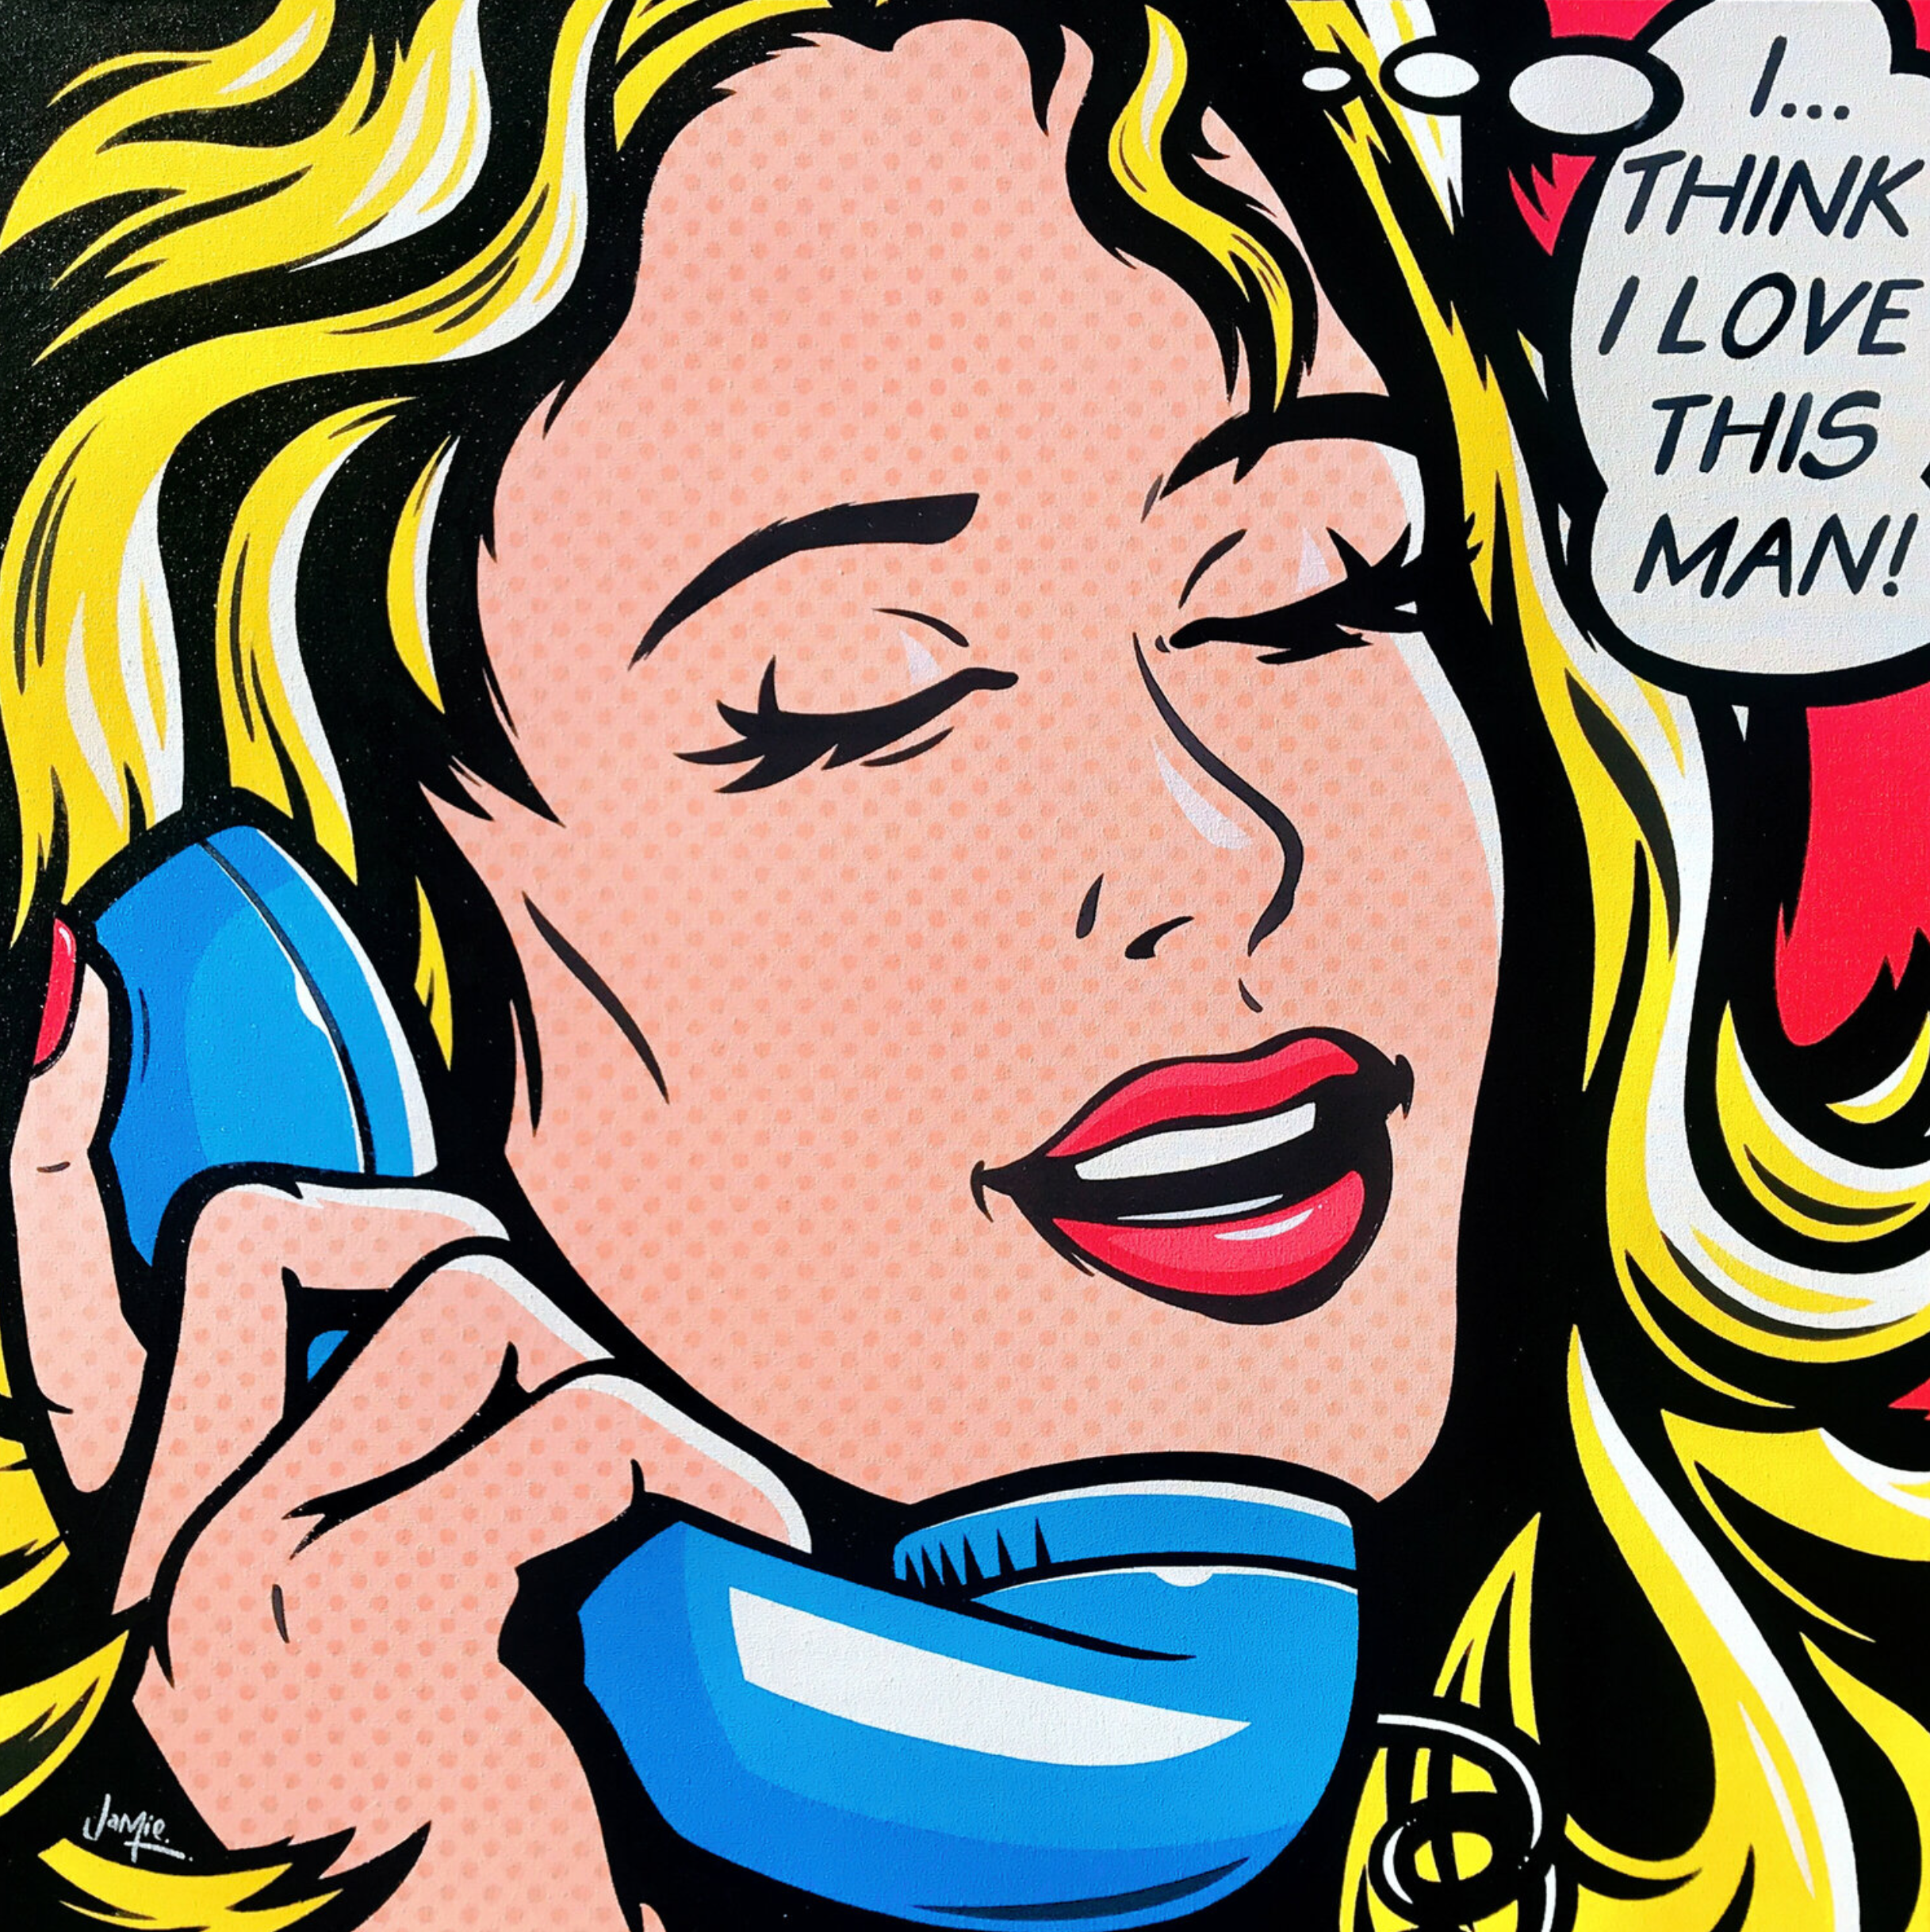 杰米-李的 "我想我爱这个男人 "漫画风格的流行艺术画，有原创设计，流行艺术女孩在电话里。一个漂亮的年轻女子在一个旧的复古电话上交谈，意识到她爱上了正在和她交谈的男人。